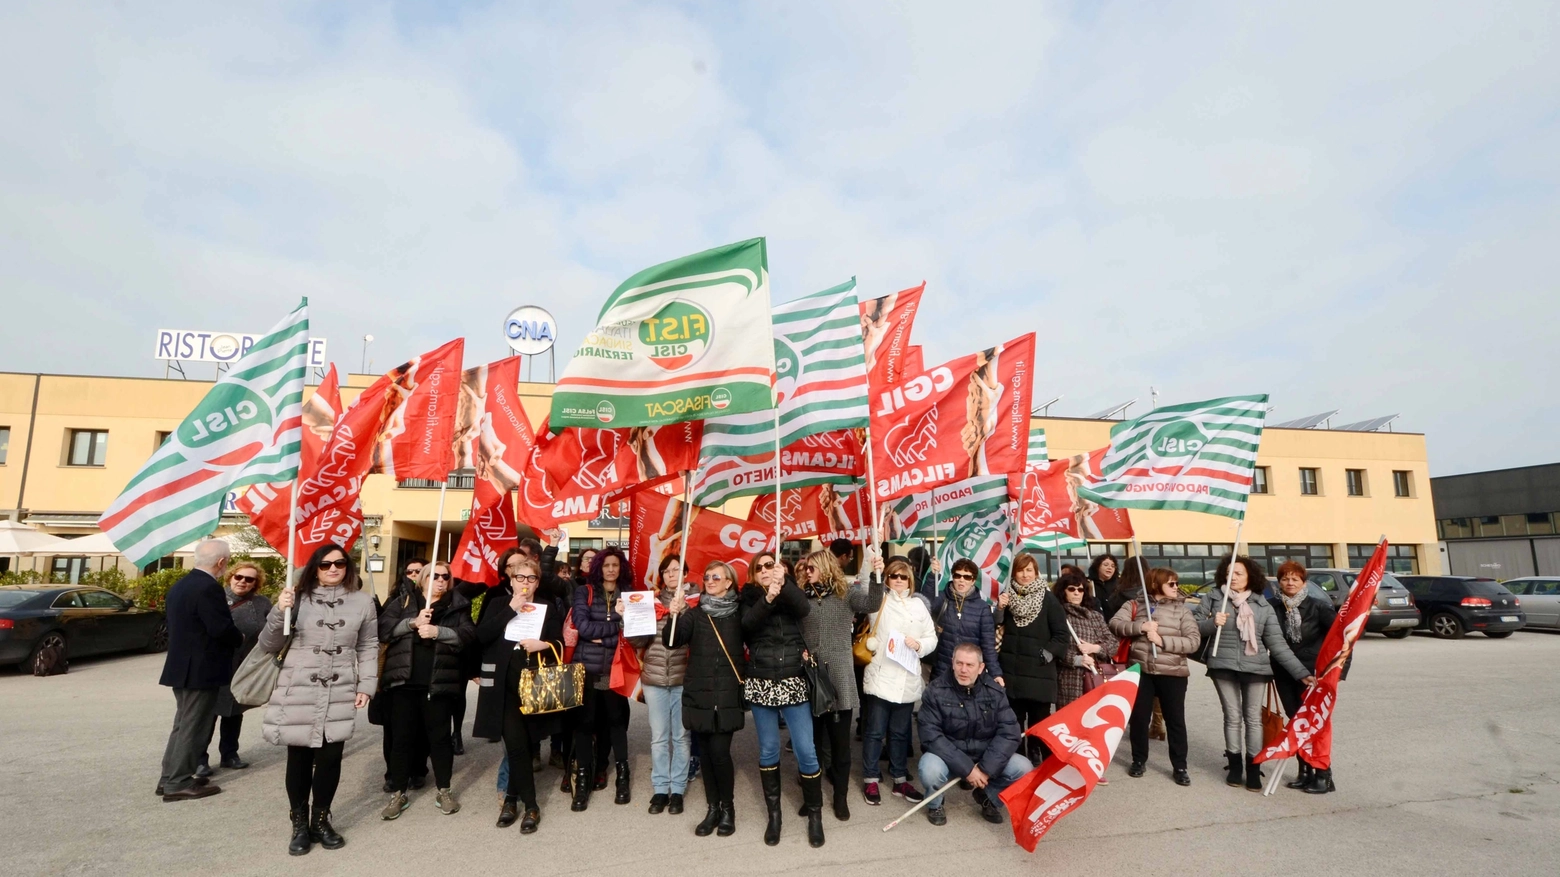 La protesta, nel marzo scorso, dei dipendenti della Cna (Foto Donzelli)